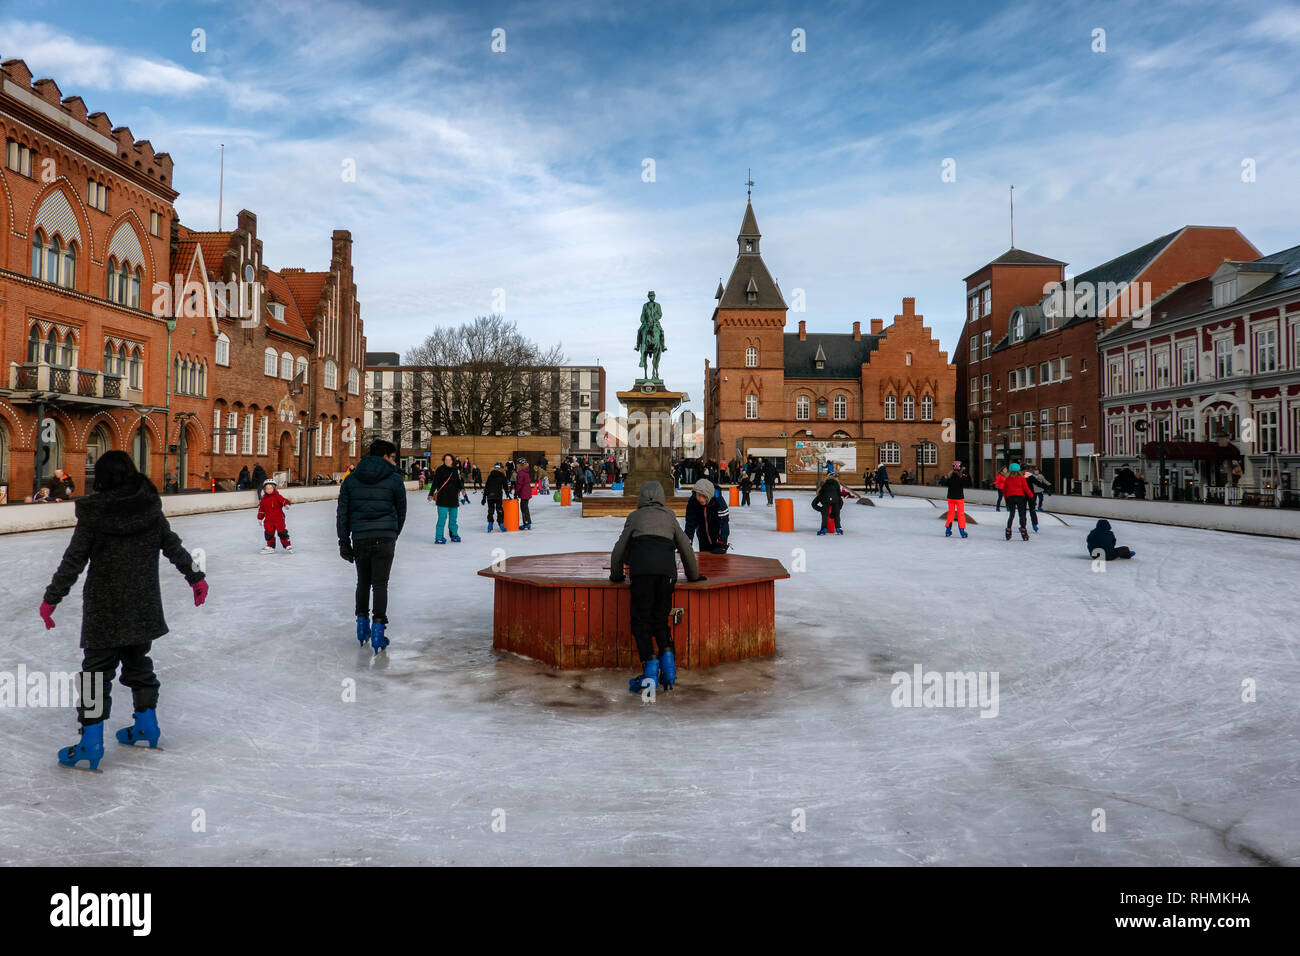 Ice skating in Esbjerg city center when wintertime, Denmark Stock Photo